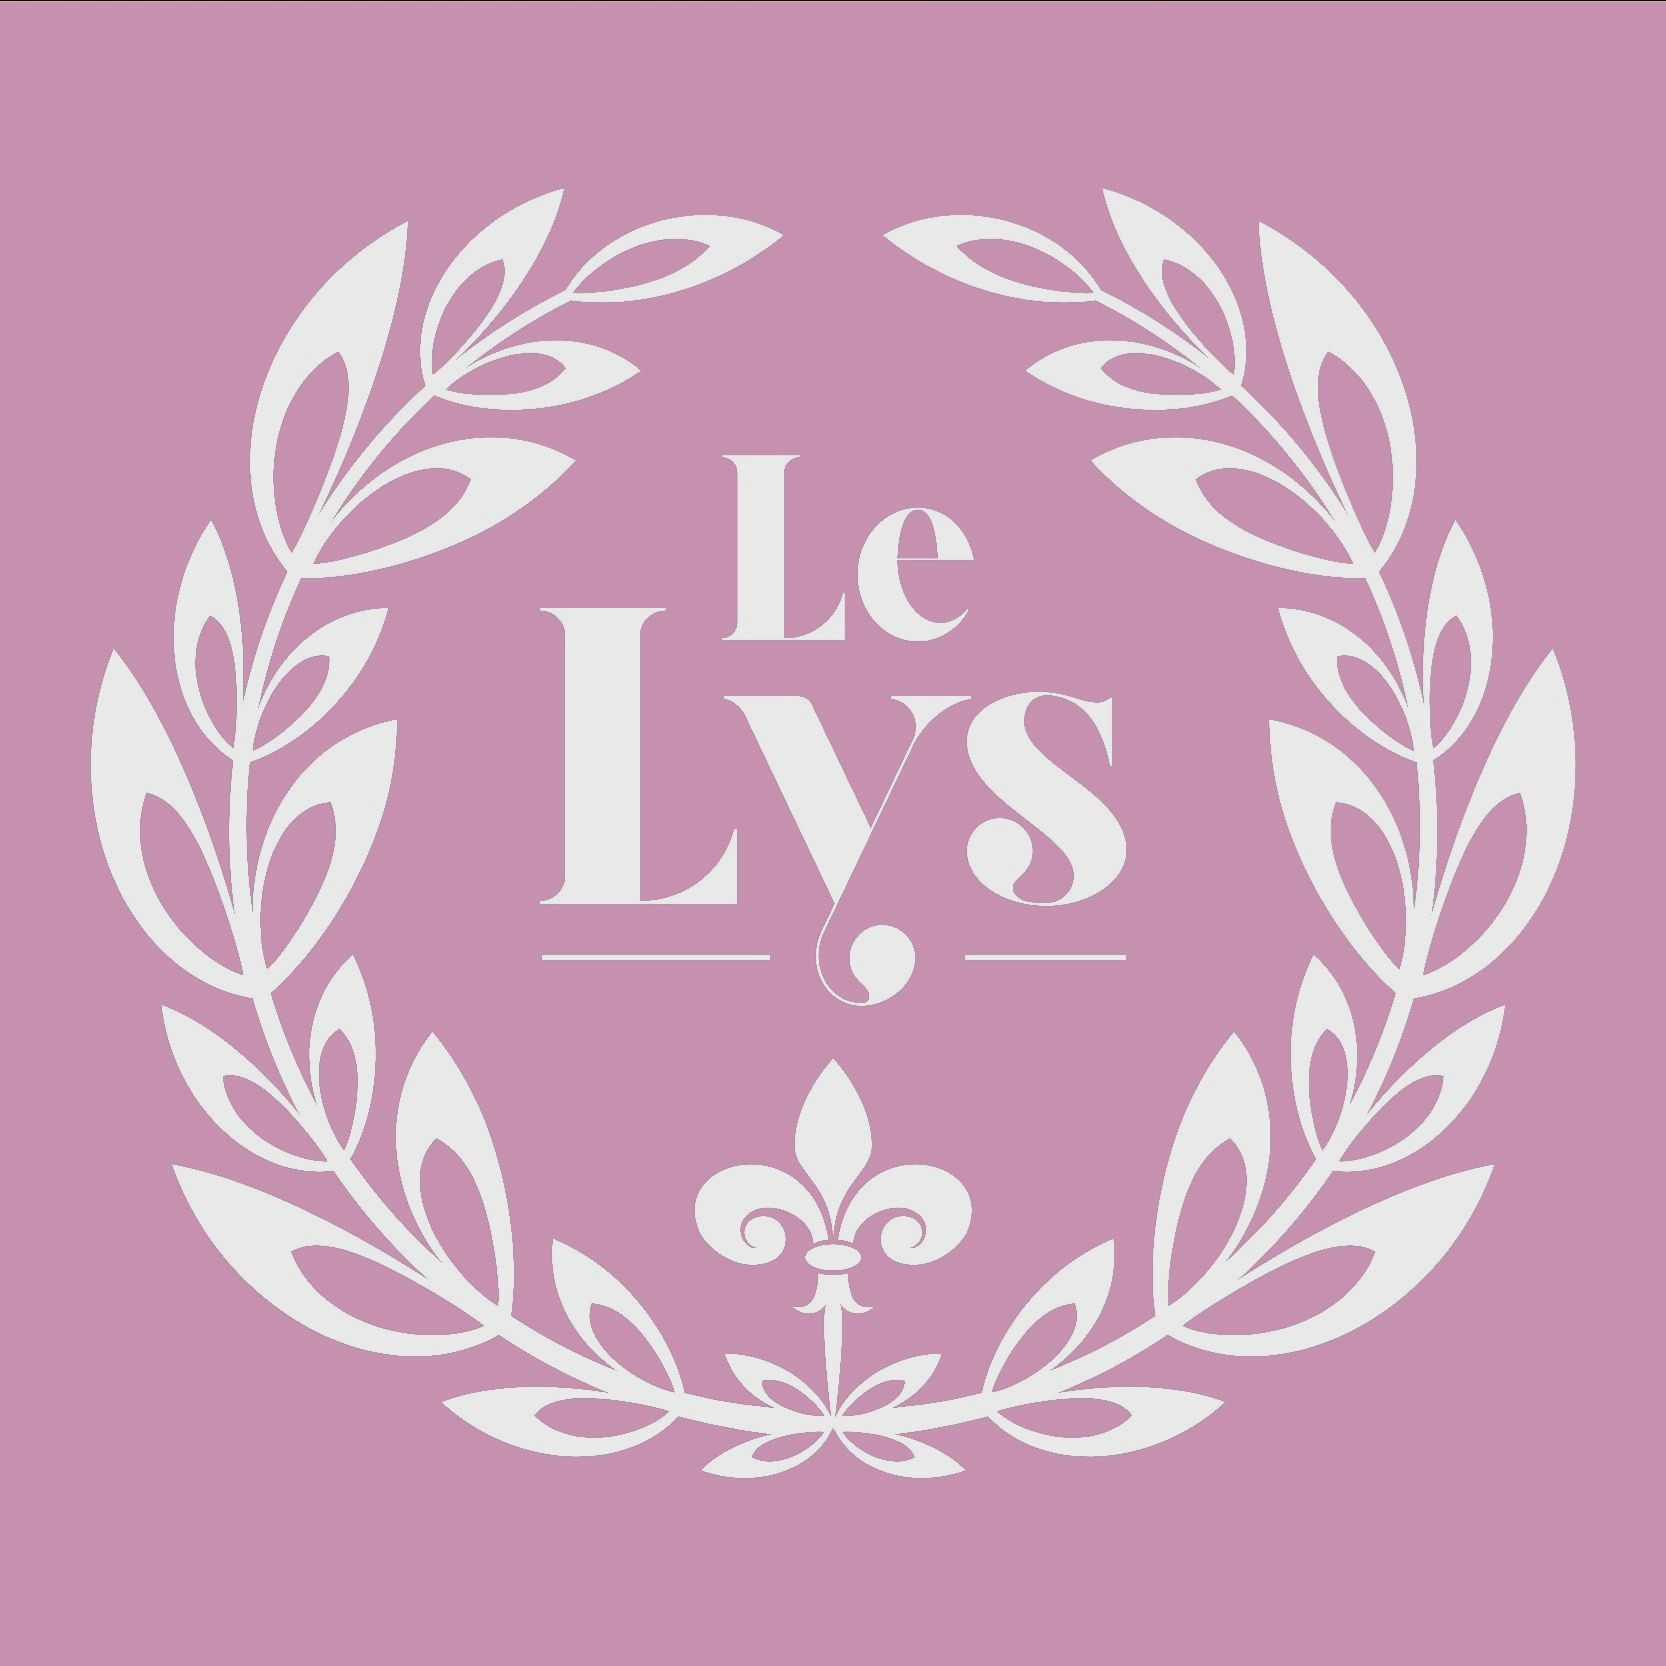 Le Lys